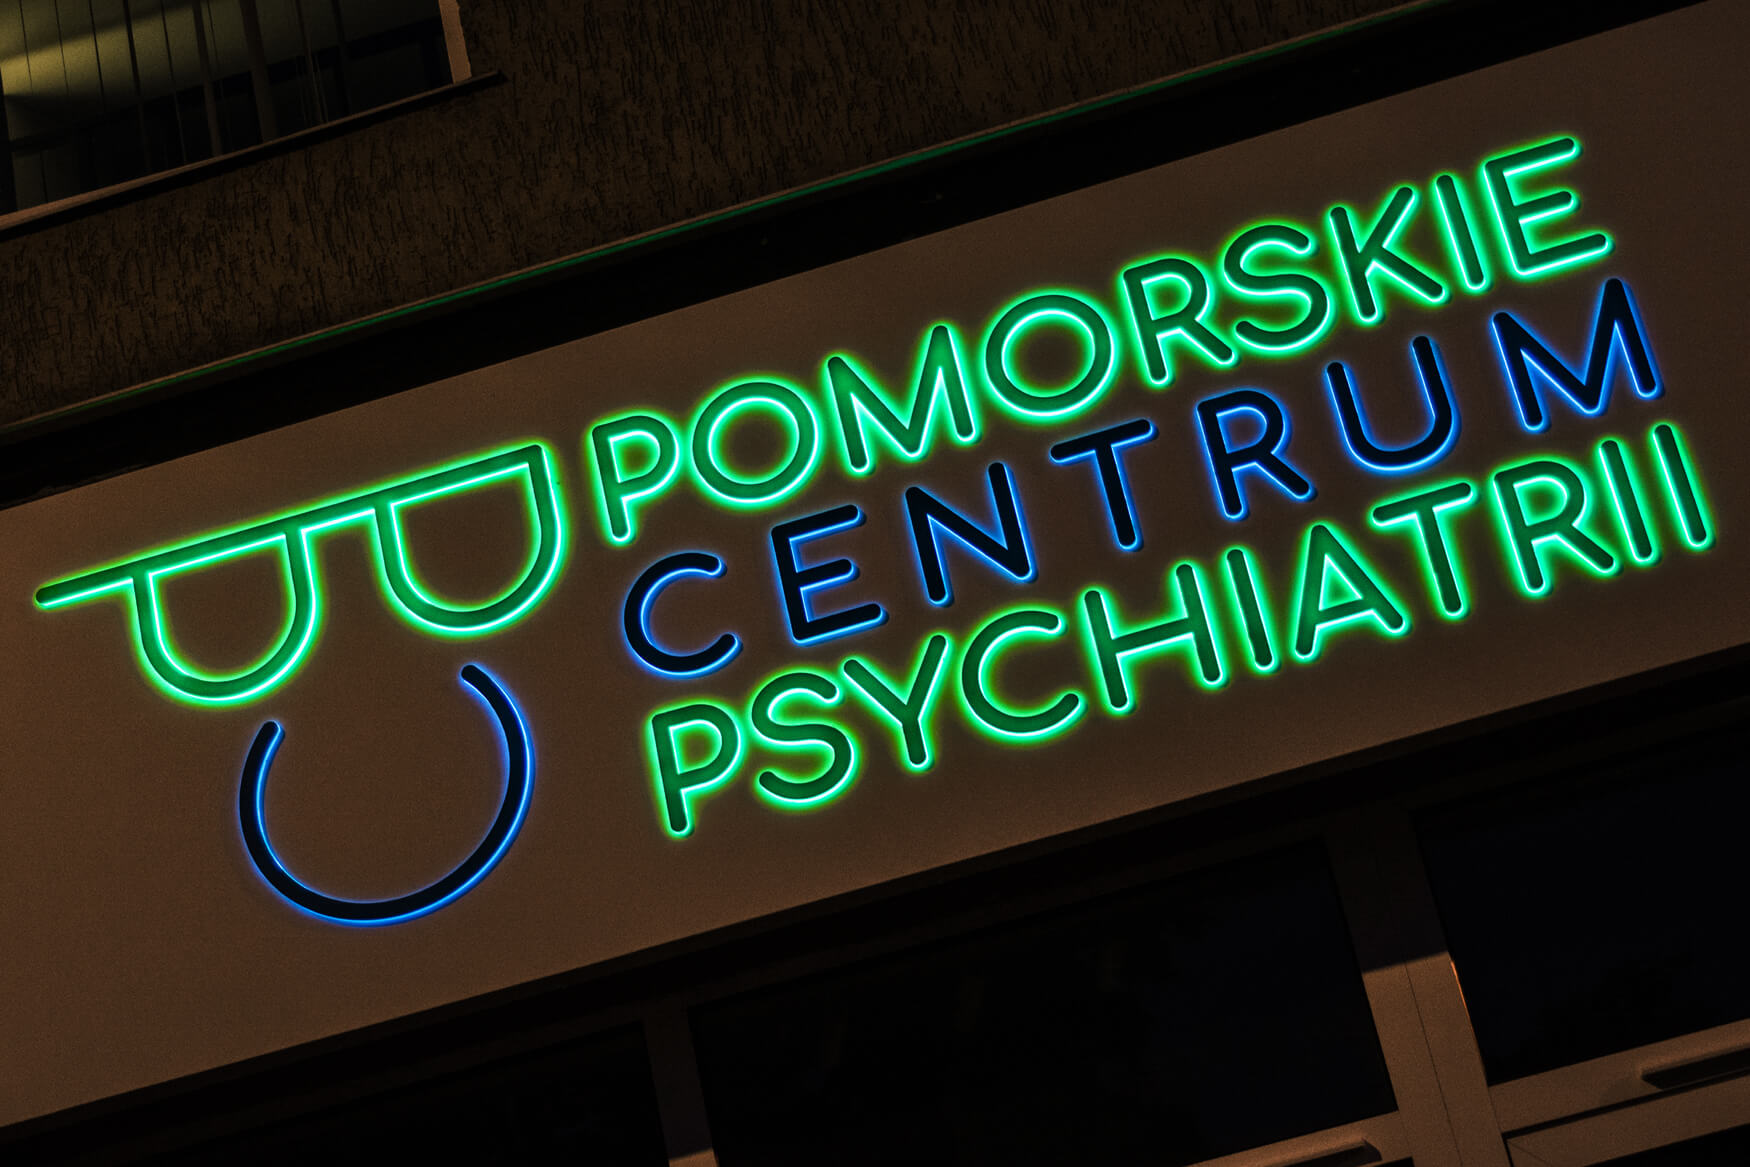 centro de psiquiatría de pomerania - Centro Psiquiátrico Pomerania - panel publicitario de dibond colocado sobre la entrada